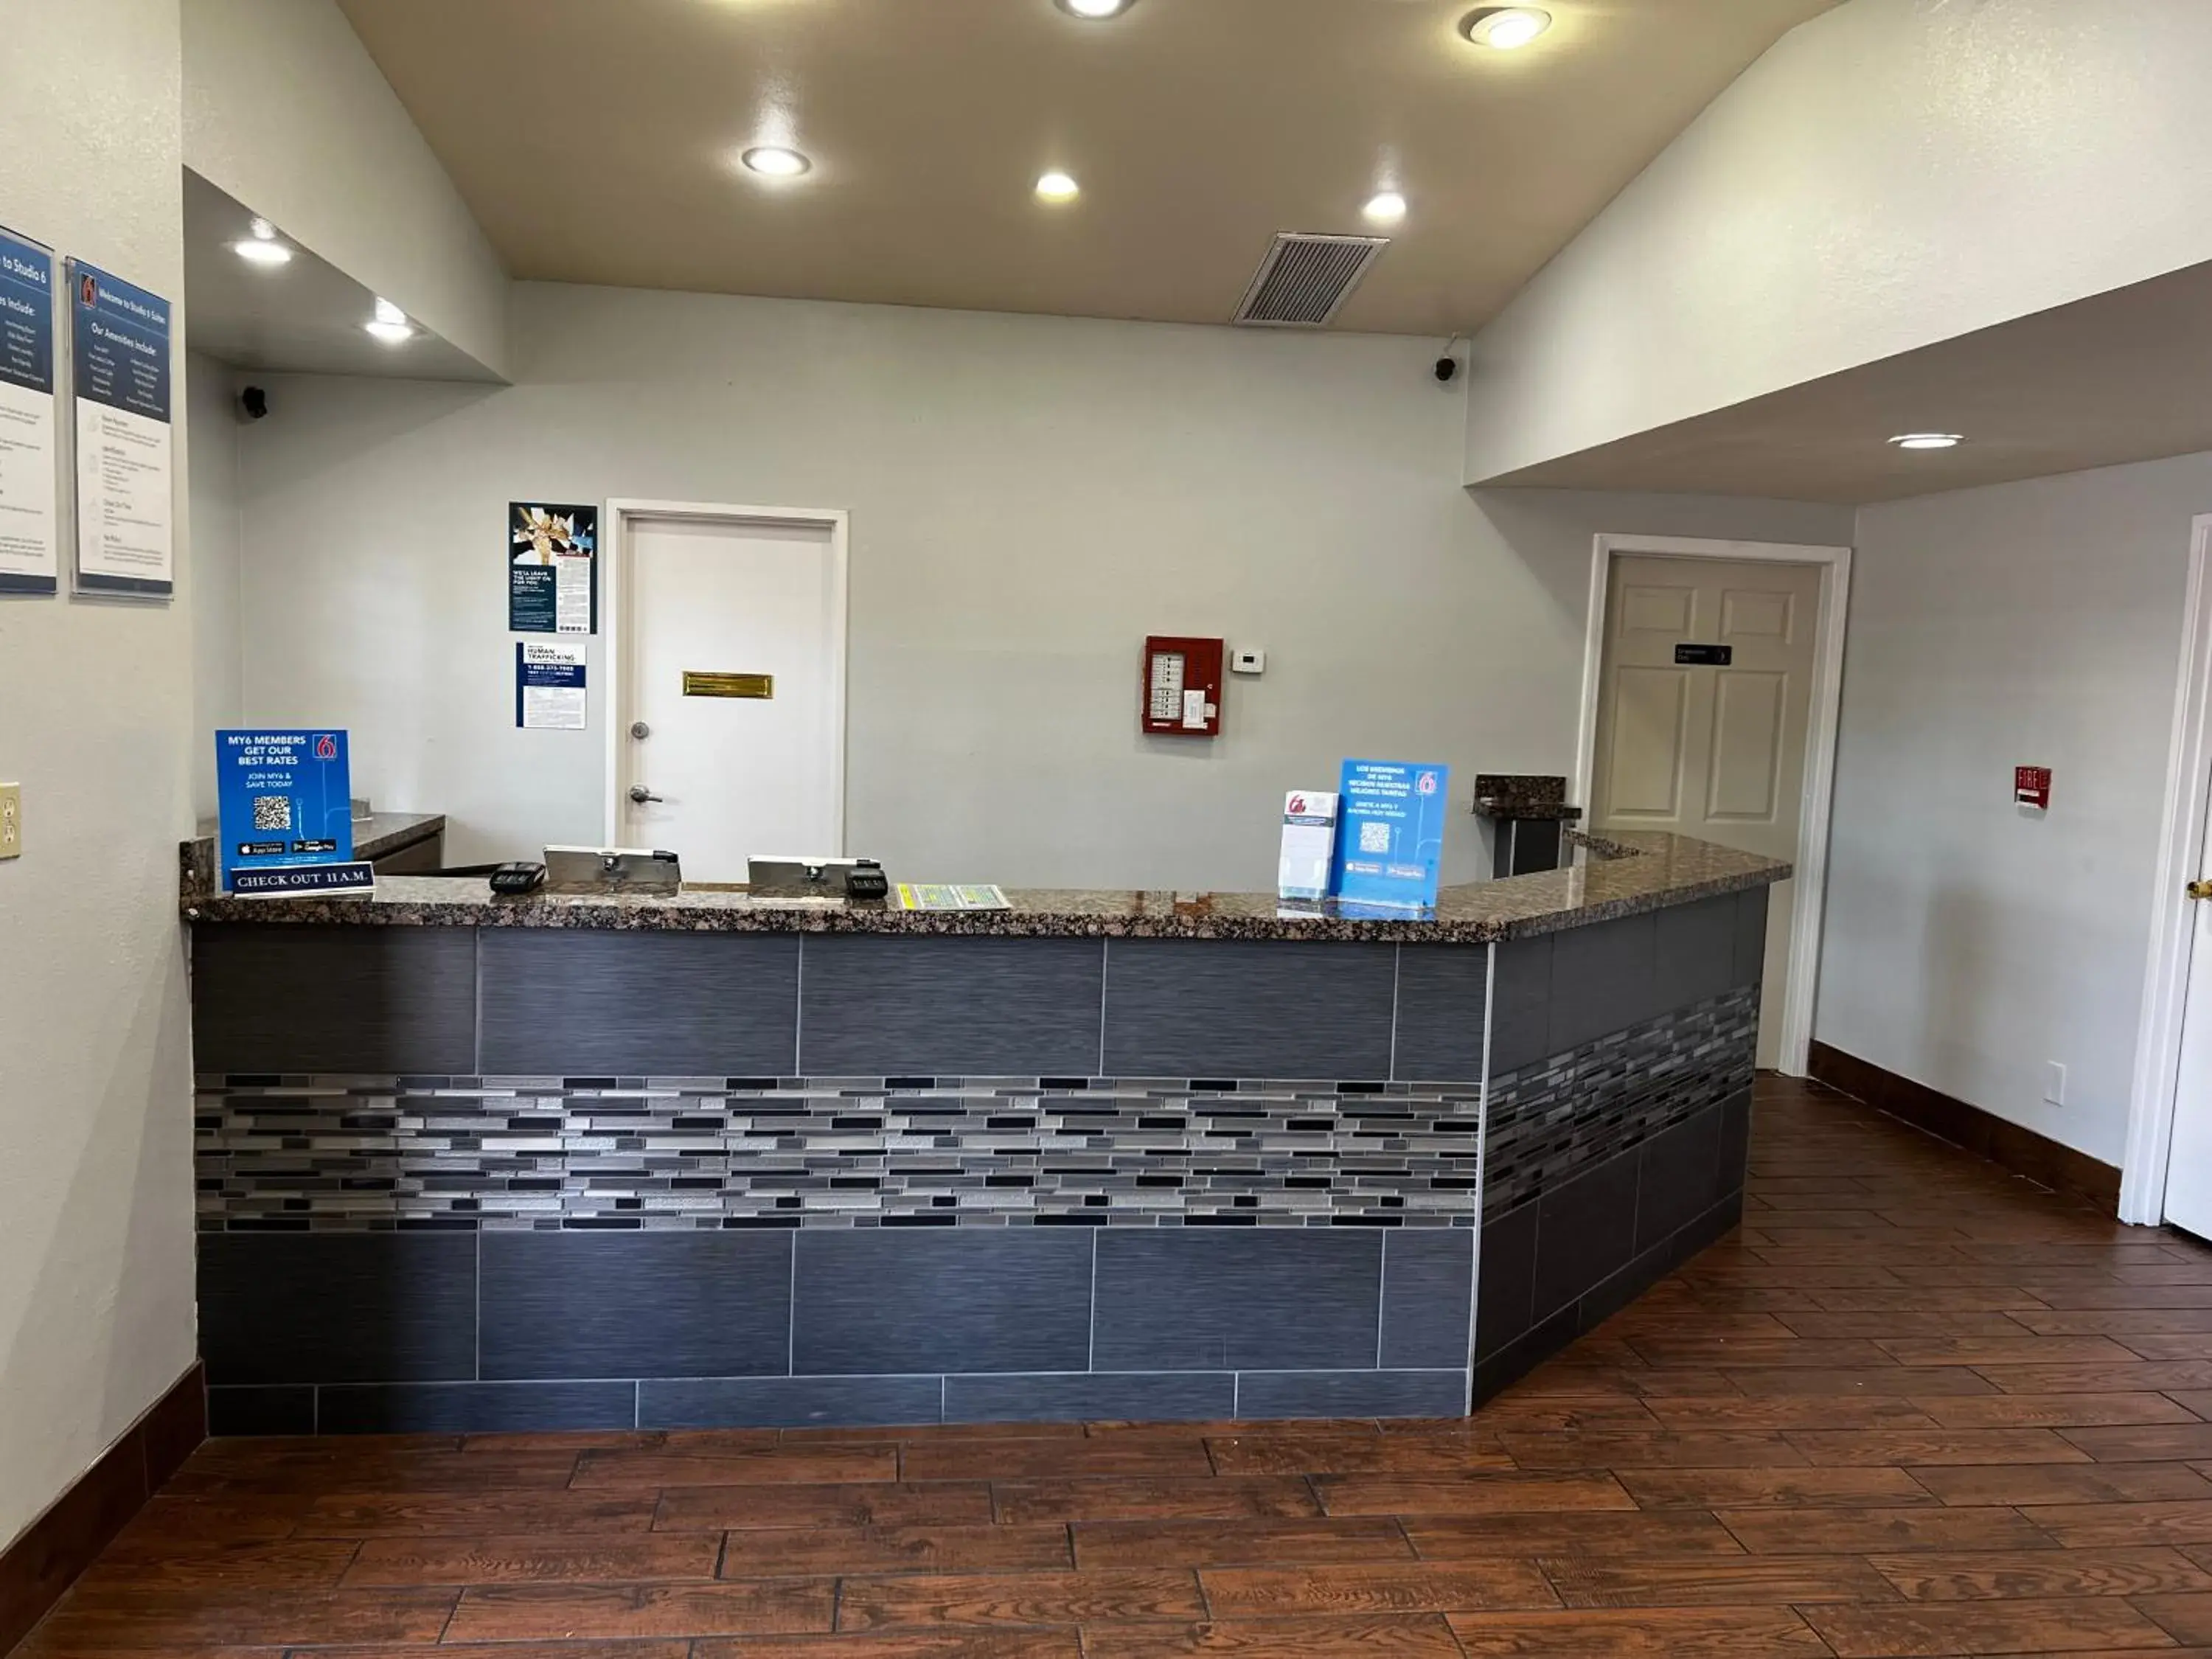 Lobby or reception, Lobby/Reception in Studio 6 Flagstaff AZ